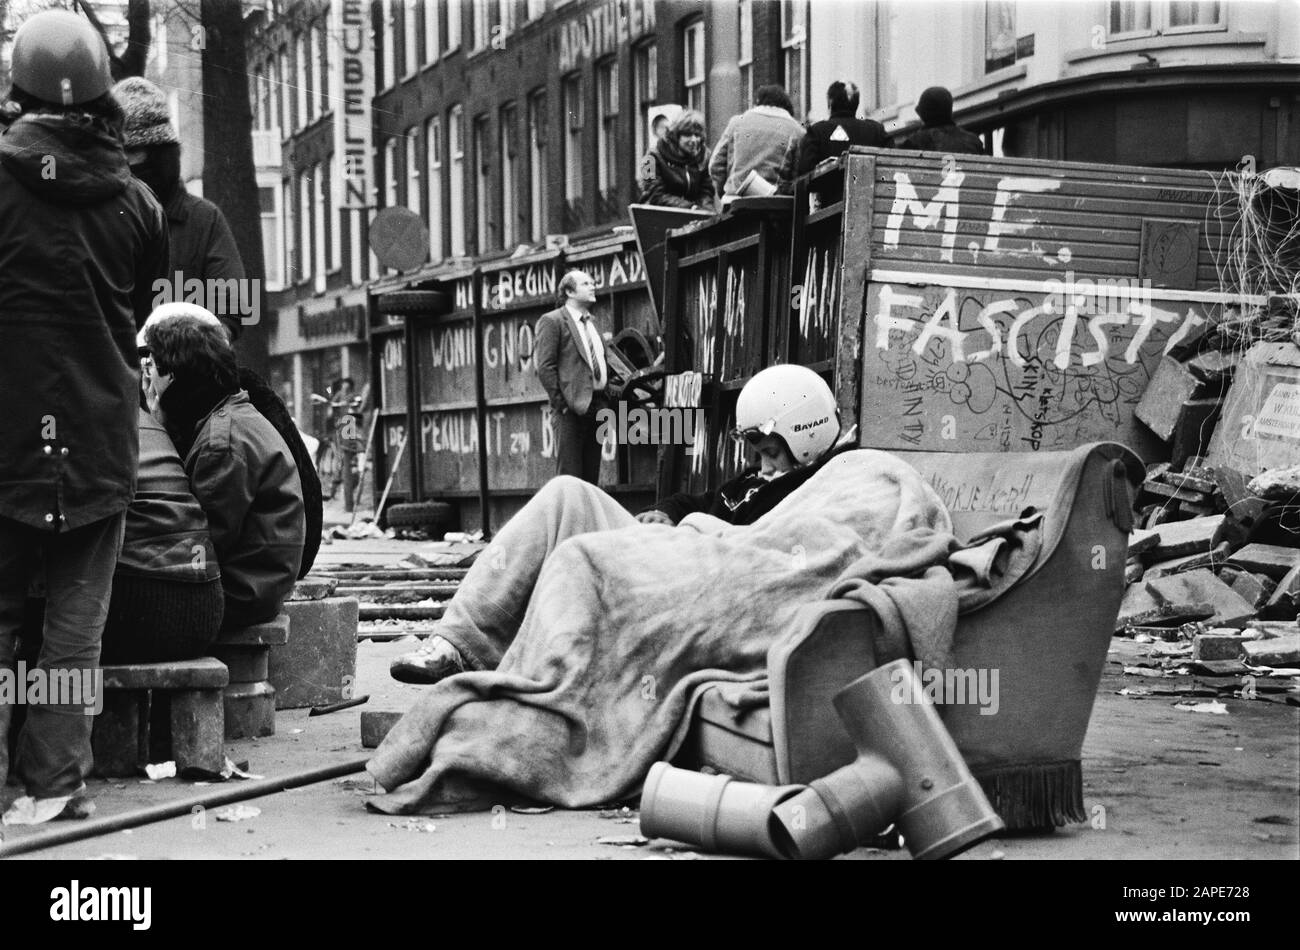 barricaden-around-squatting-in-vondelstraat-amsterdam-cracker-sleeps-on-barricade-date-march-1-1980-location-amsterdam-noord-holland-keywords-barricades-squats-2APE728.jpg